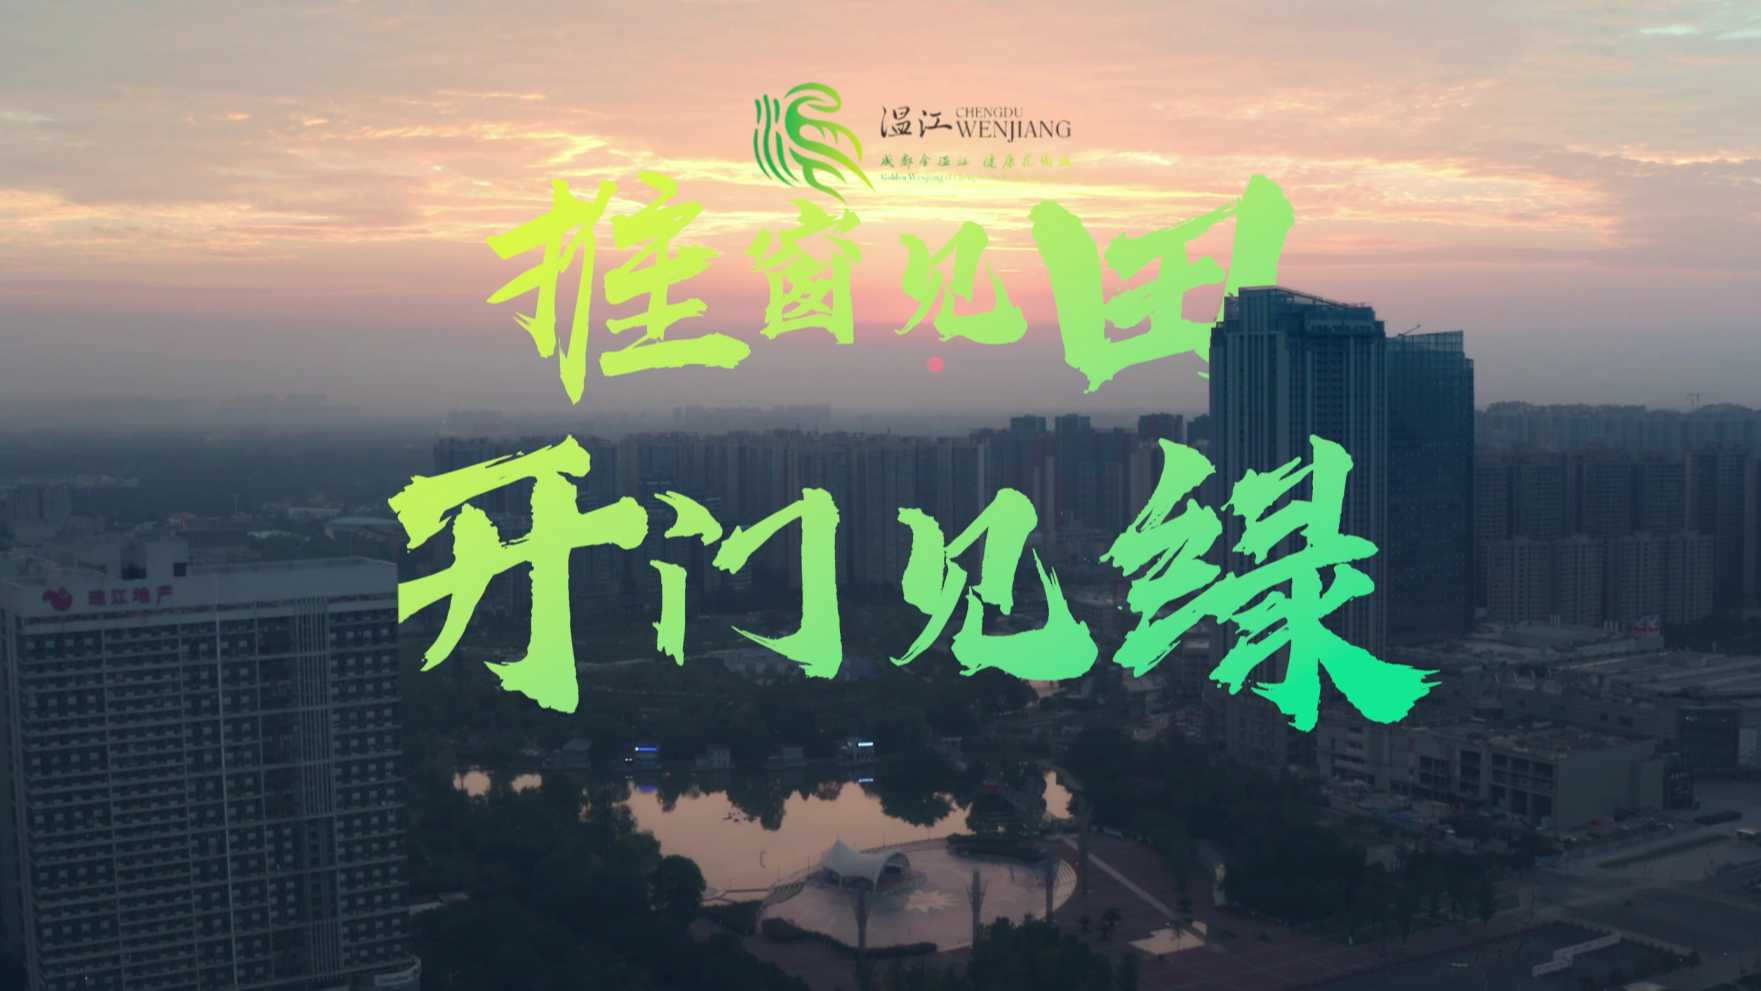 《温江绿道，串联美好生活》成都温江区公园城市宣传片